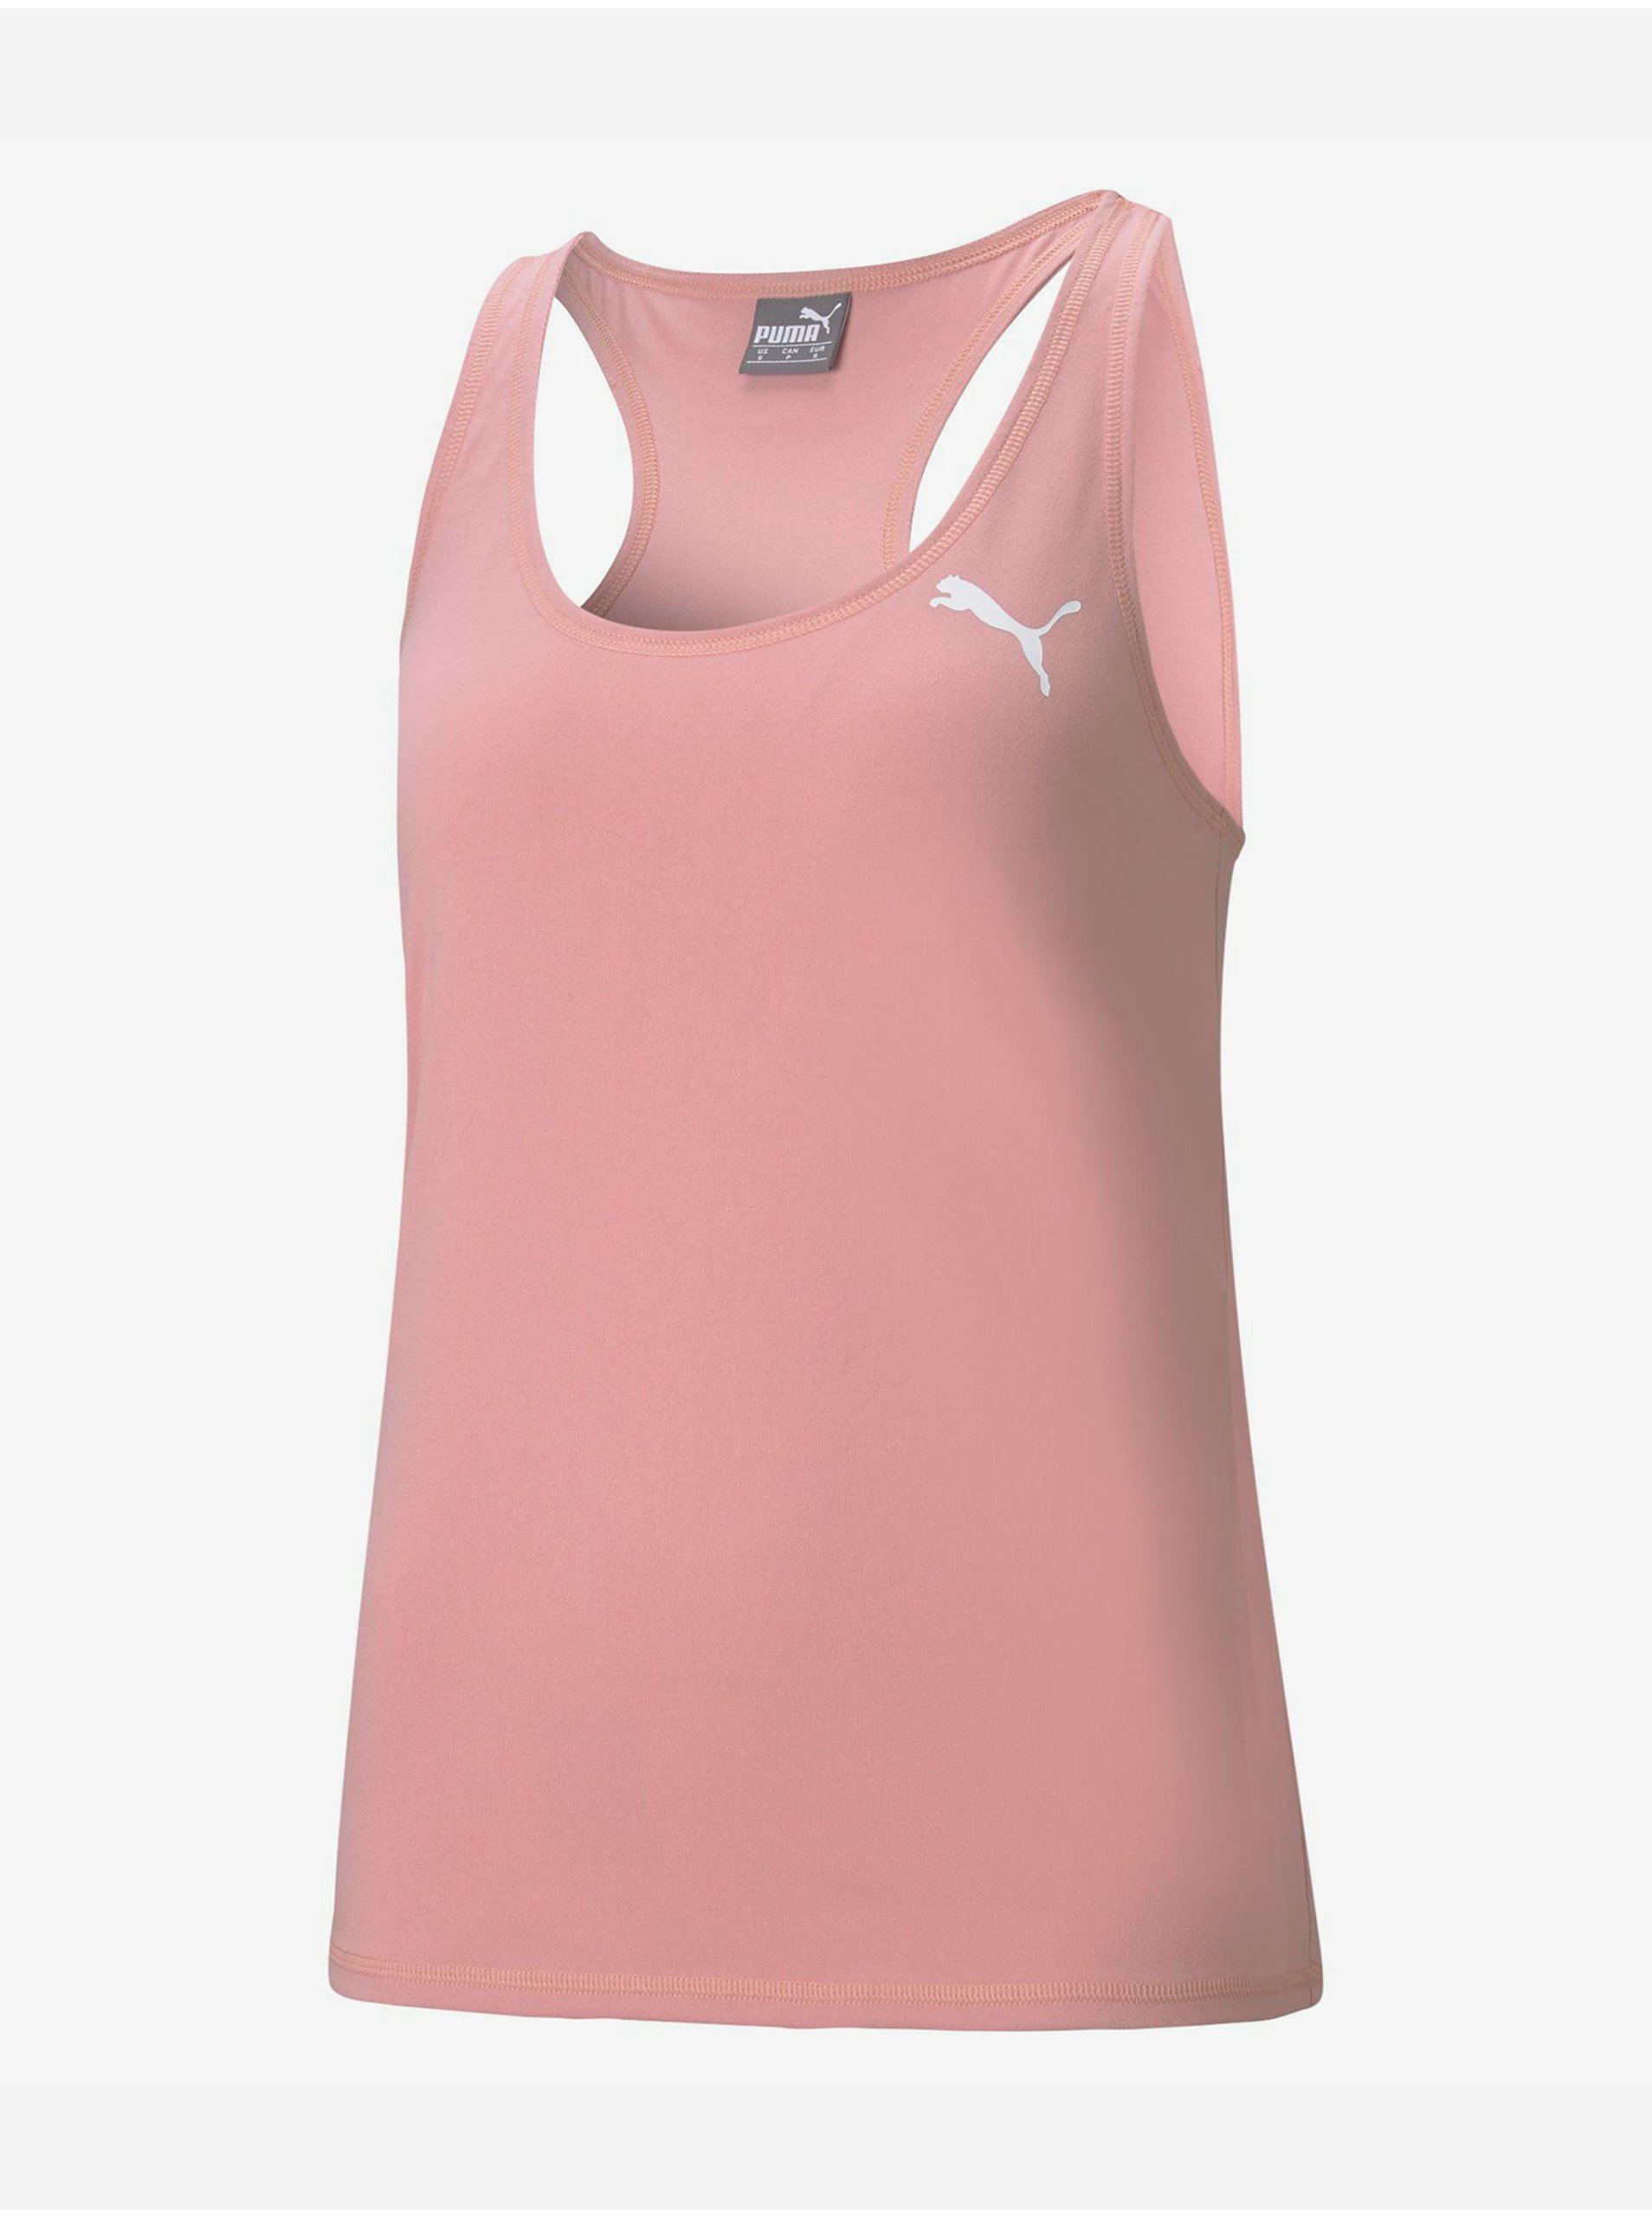 Lacno Topy a trička pre ženy Puma - ružová